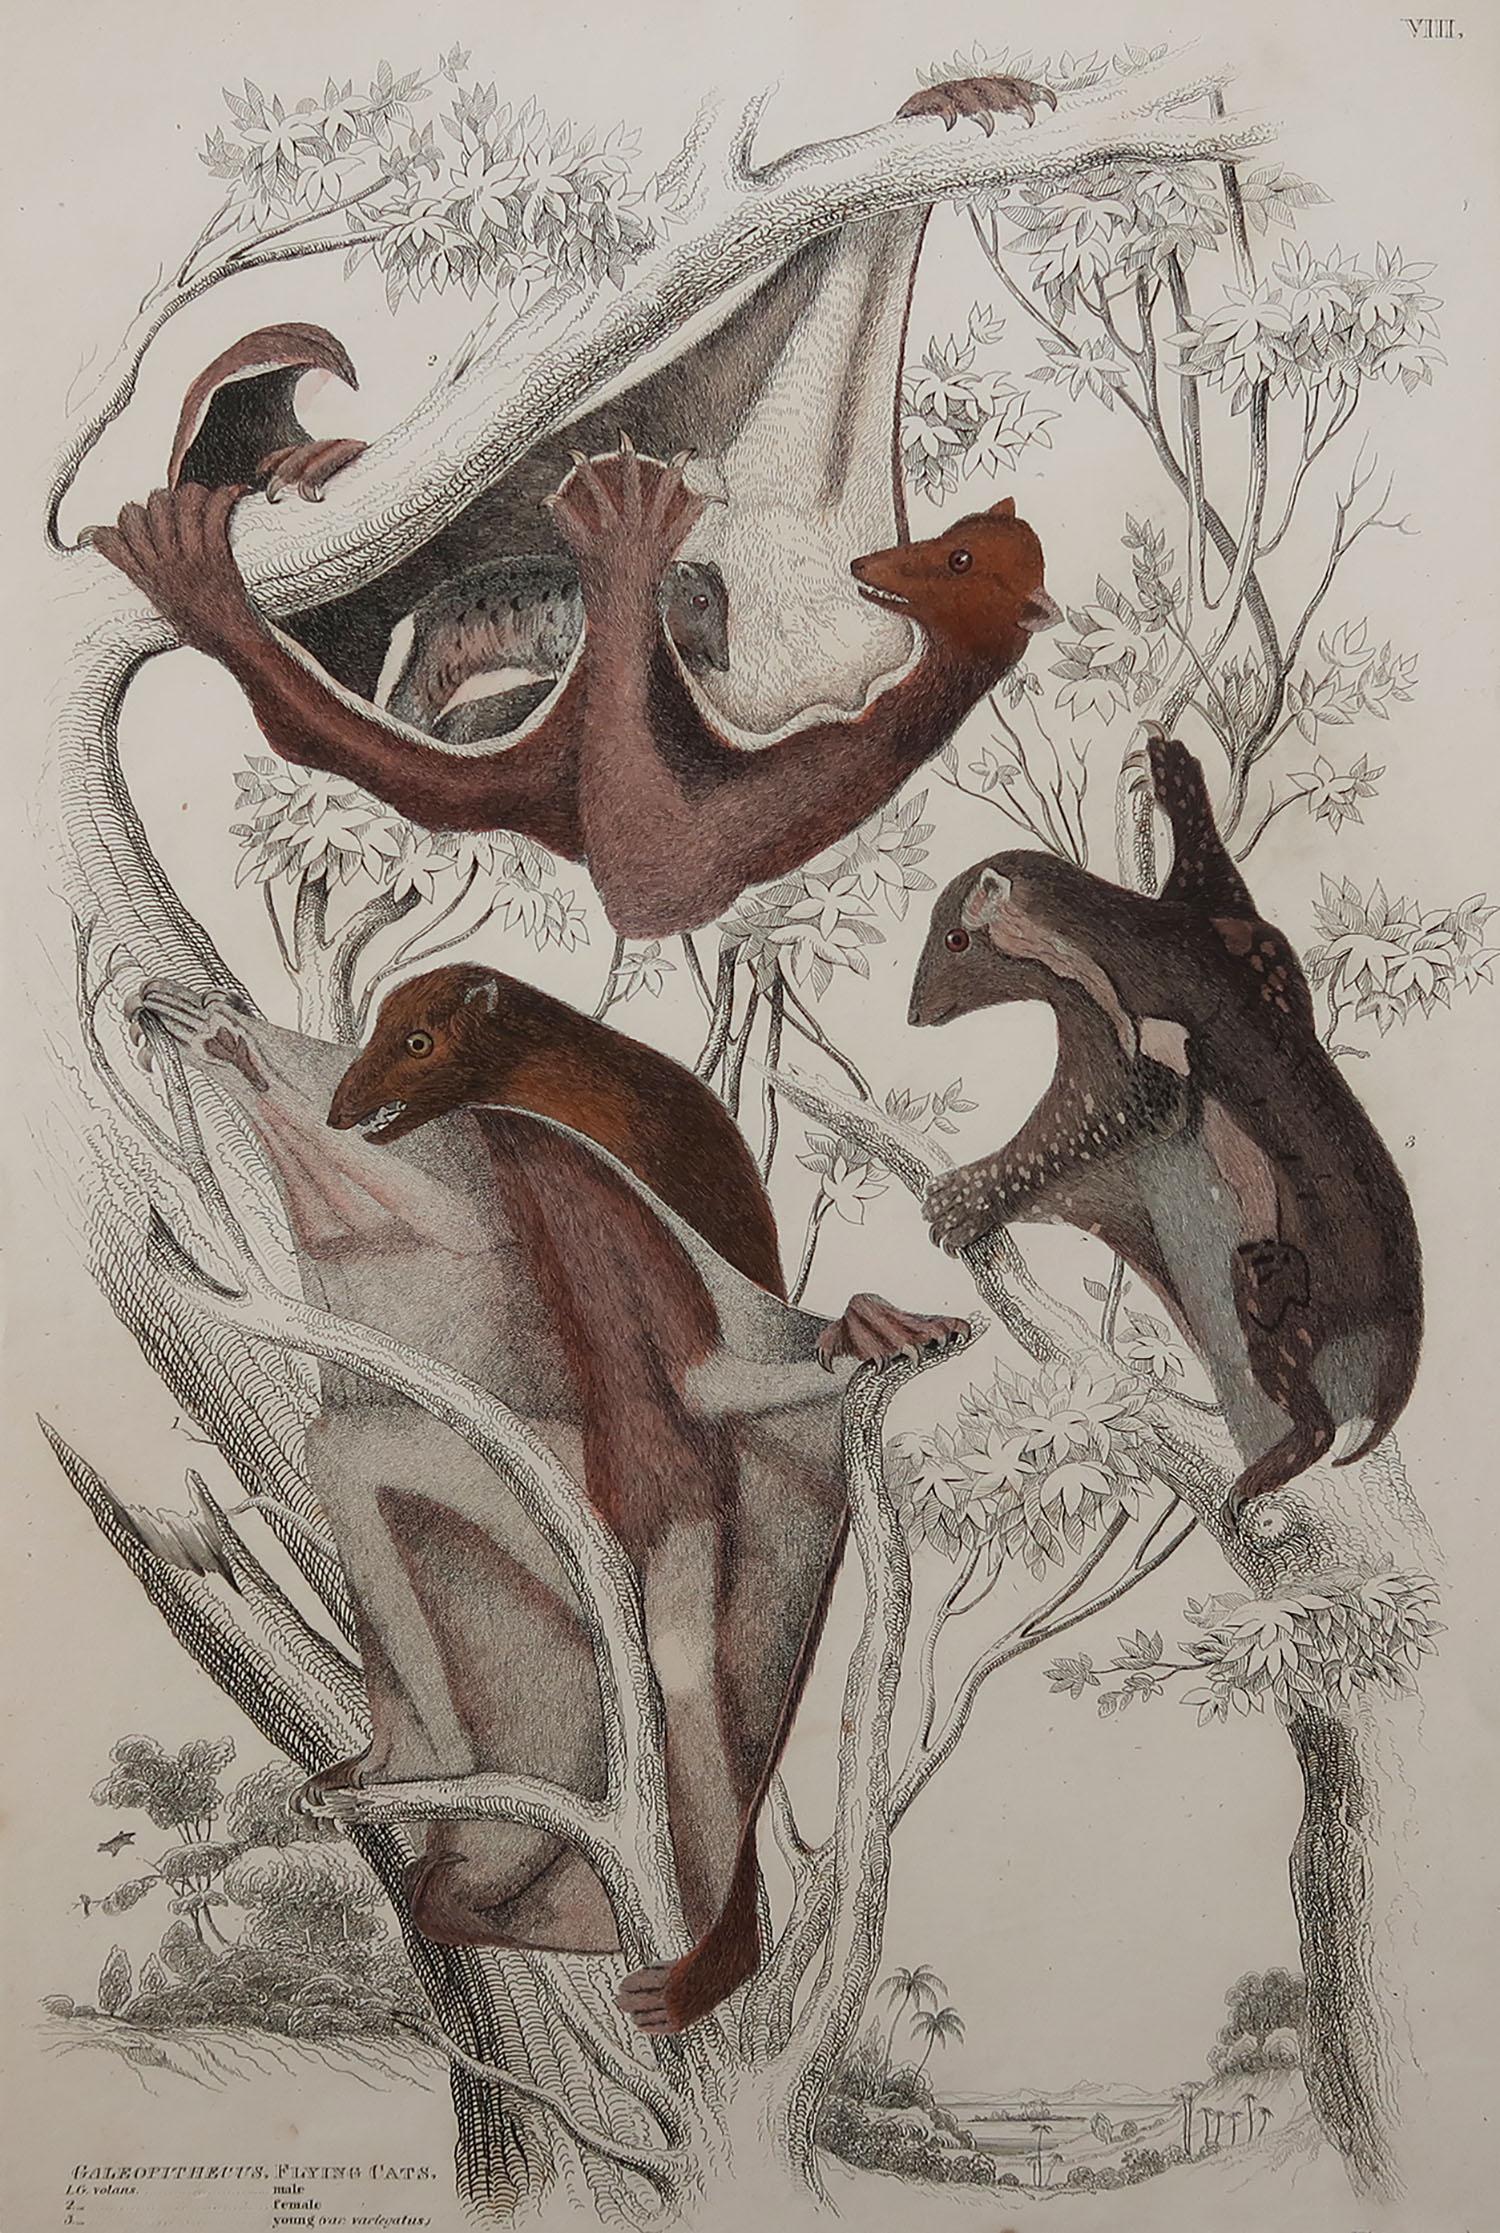 Tolles Bild von einem fliegenden Lemur

Ungerahmt. So haben Sie die Möglichkeit, Ihre eigene Auswahl an Rahmen zu treffen.

Lithographie nach Cpt. Brown mit Original-Handkolorit.

Veröffentlicht um 1835

Kostenloser Versand.




 